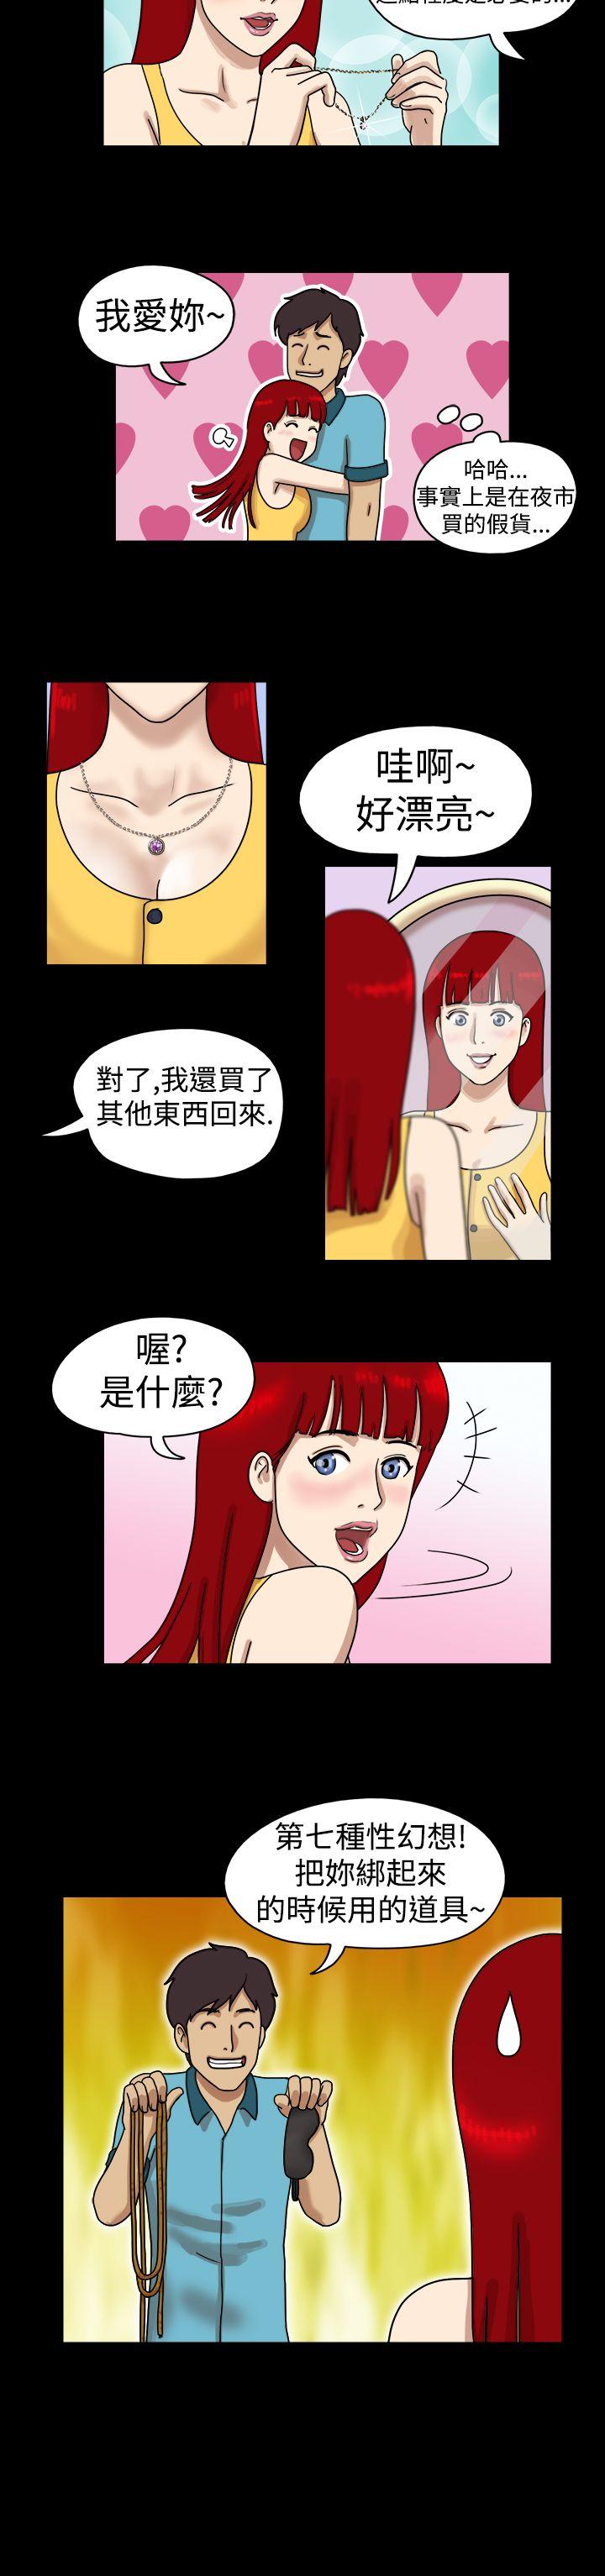 韩国污漫画 17種性幻想第一季 第17话 8